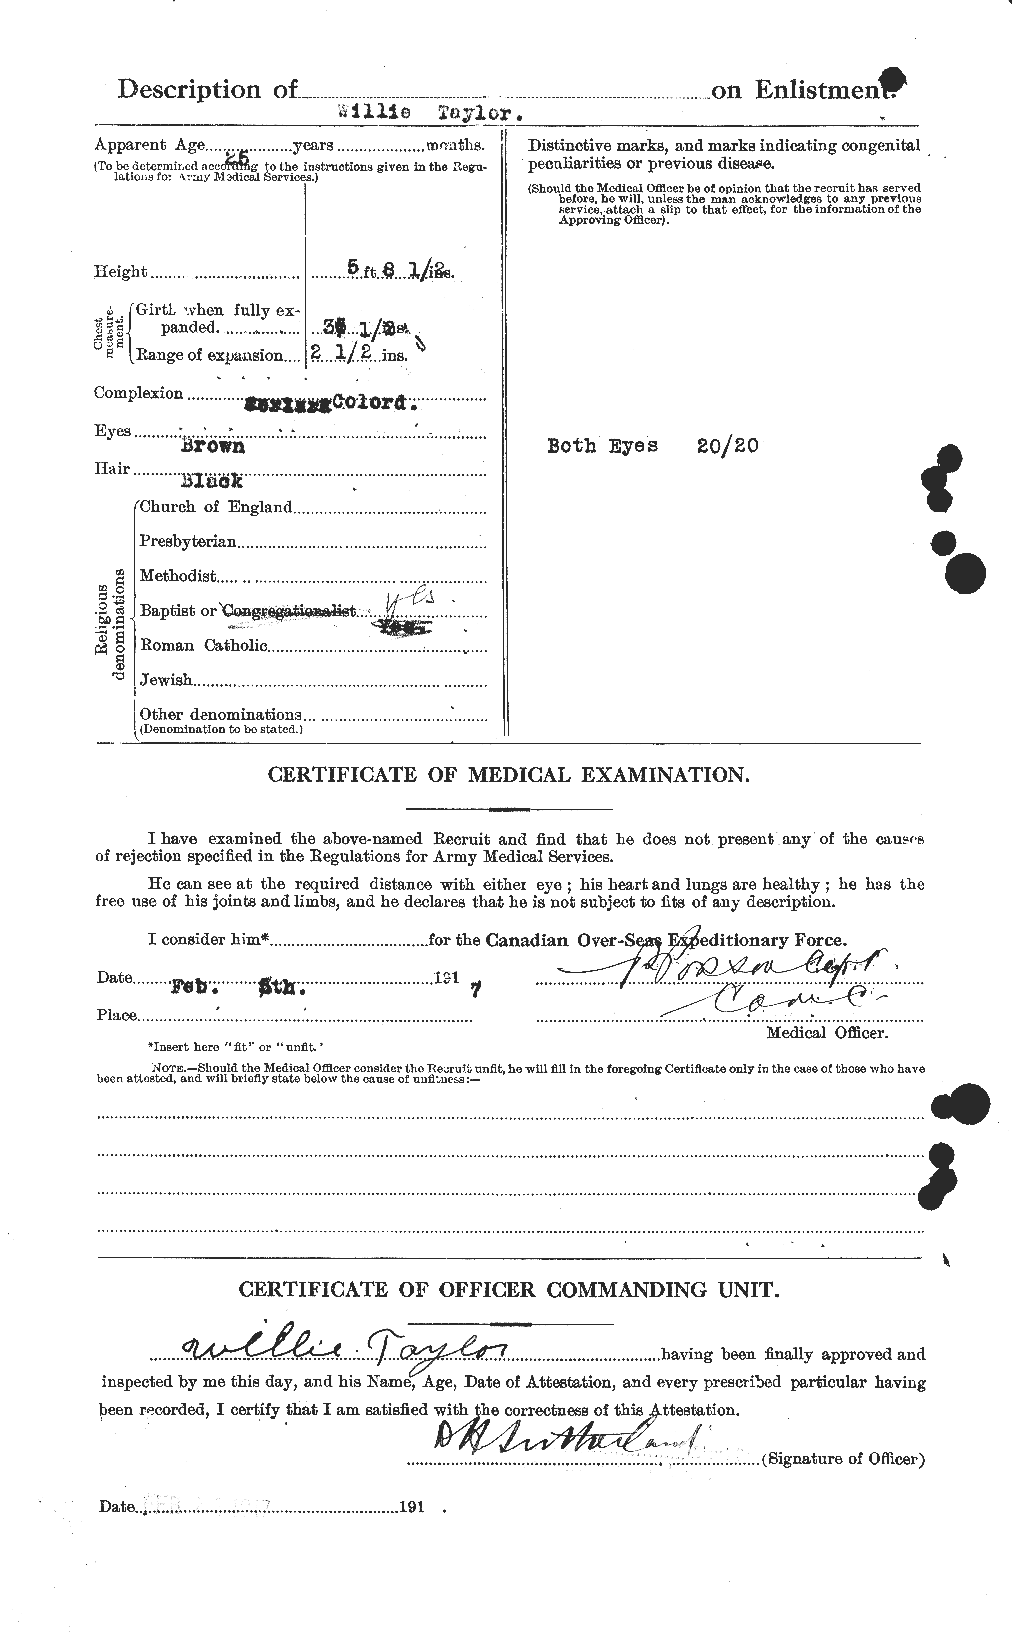 Dossiers du Personnel de la Première Guerre mondiale - CEC 628369b